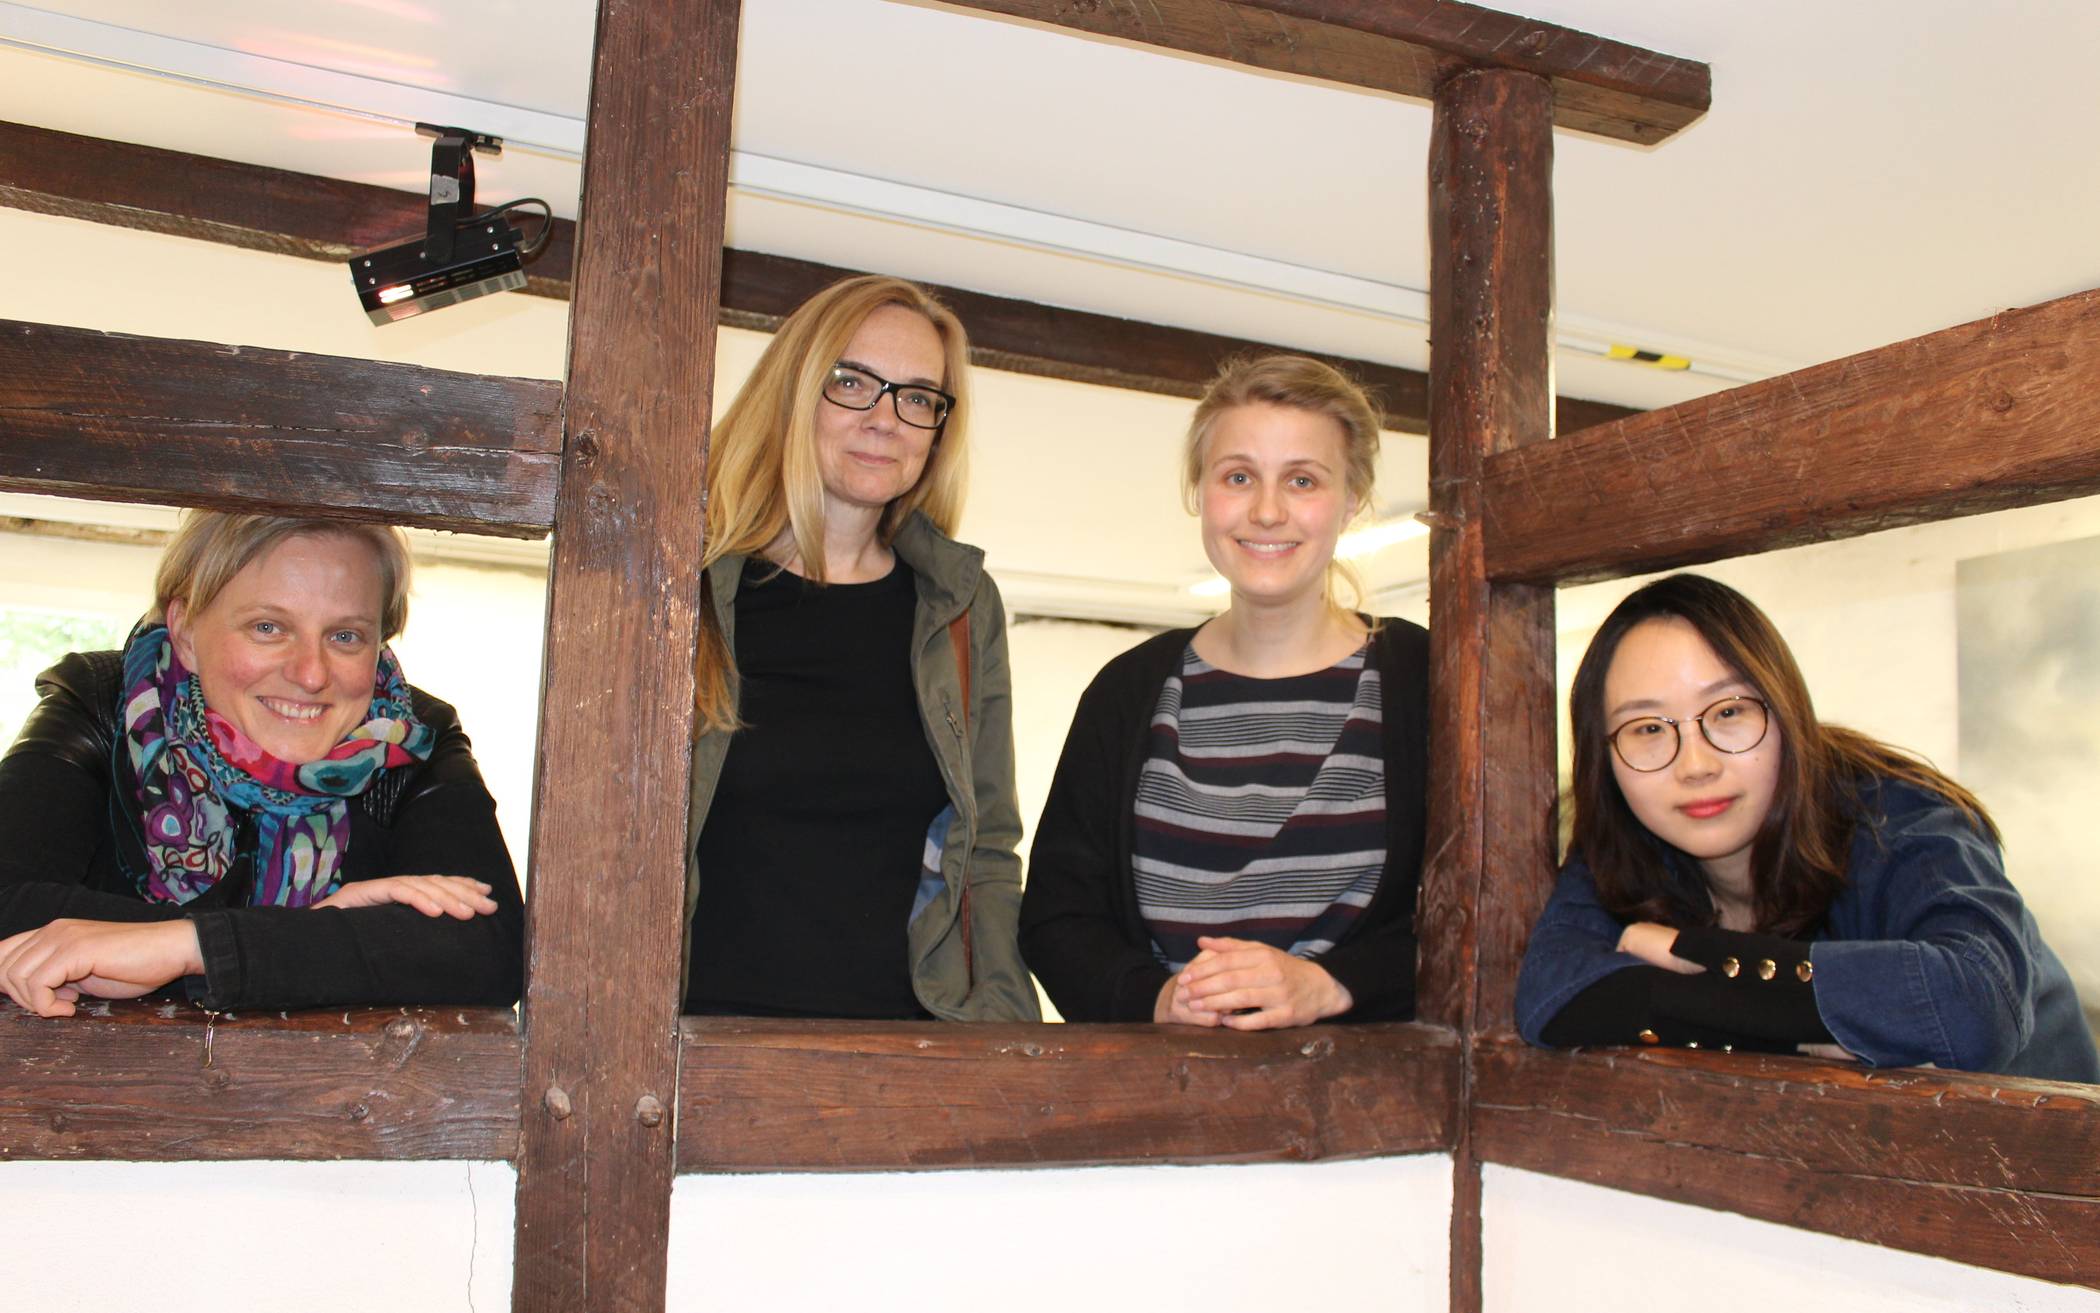  Maren Hering, Tanja Bremer, Jasmin Hantl und Xiaoye Xu sind nur vier von insgesamt sieben Nachwuchstalenten, die derzeit im Kunsthaus Mettmann ausstellen. 